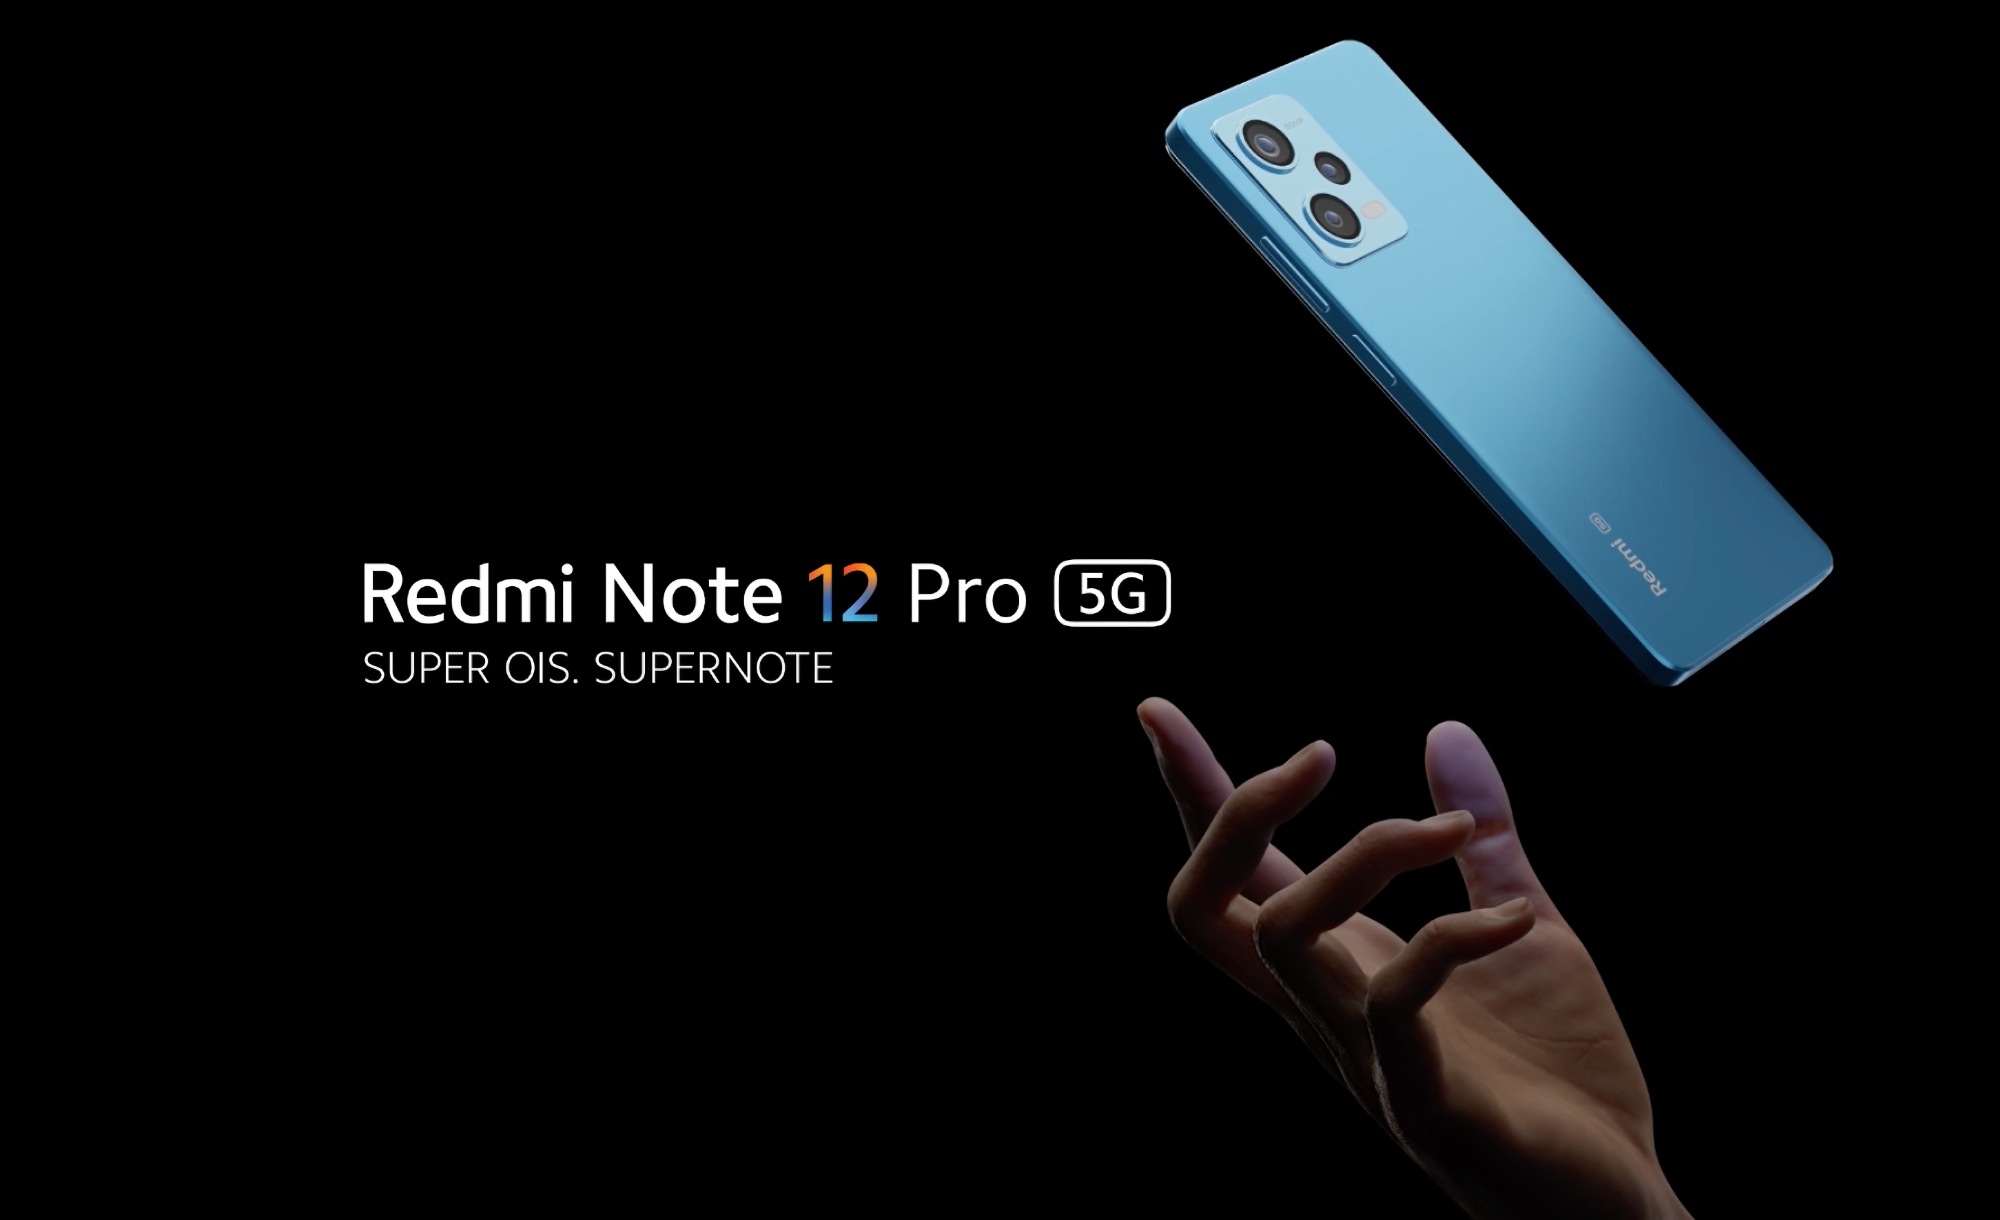 Redmi Note 12 Pro z układem MediaTek Dimensity 1080, 50 MP aparatem Sony IMX766 i szybkim ładowaniem 67W odsłonięty poza Chinami.